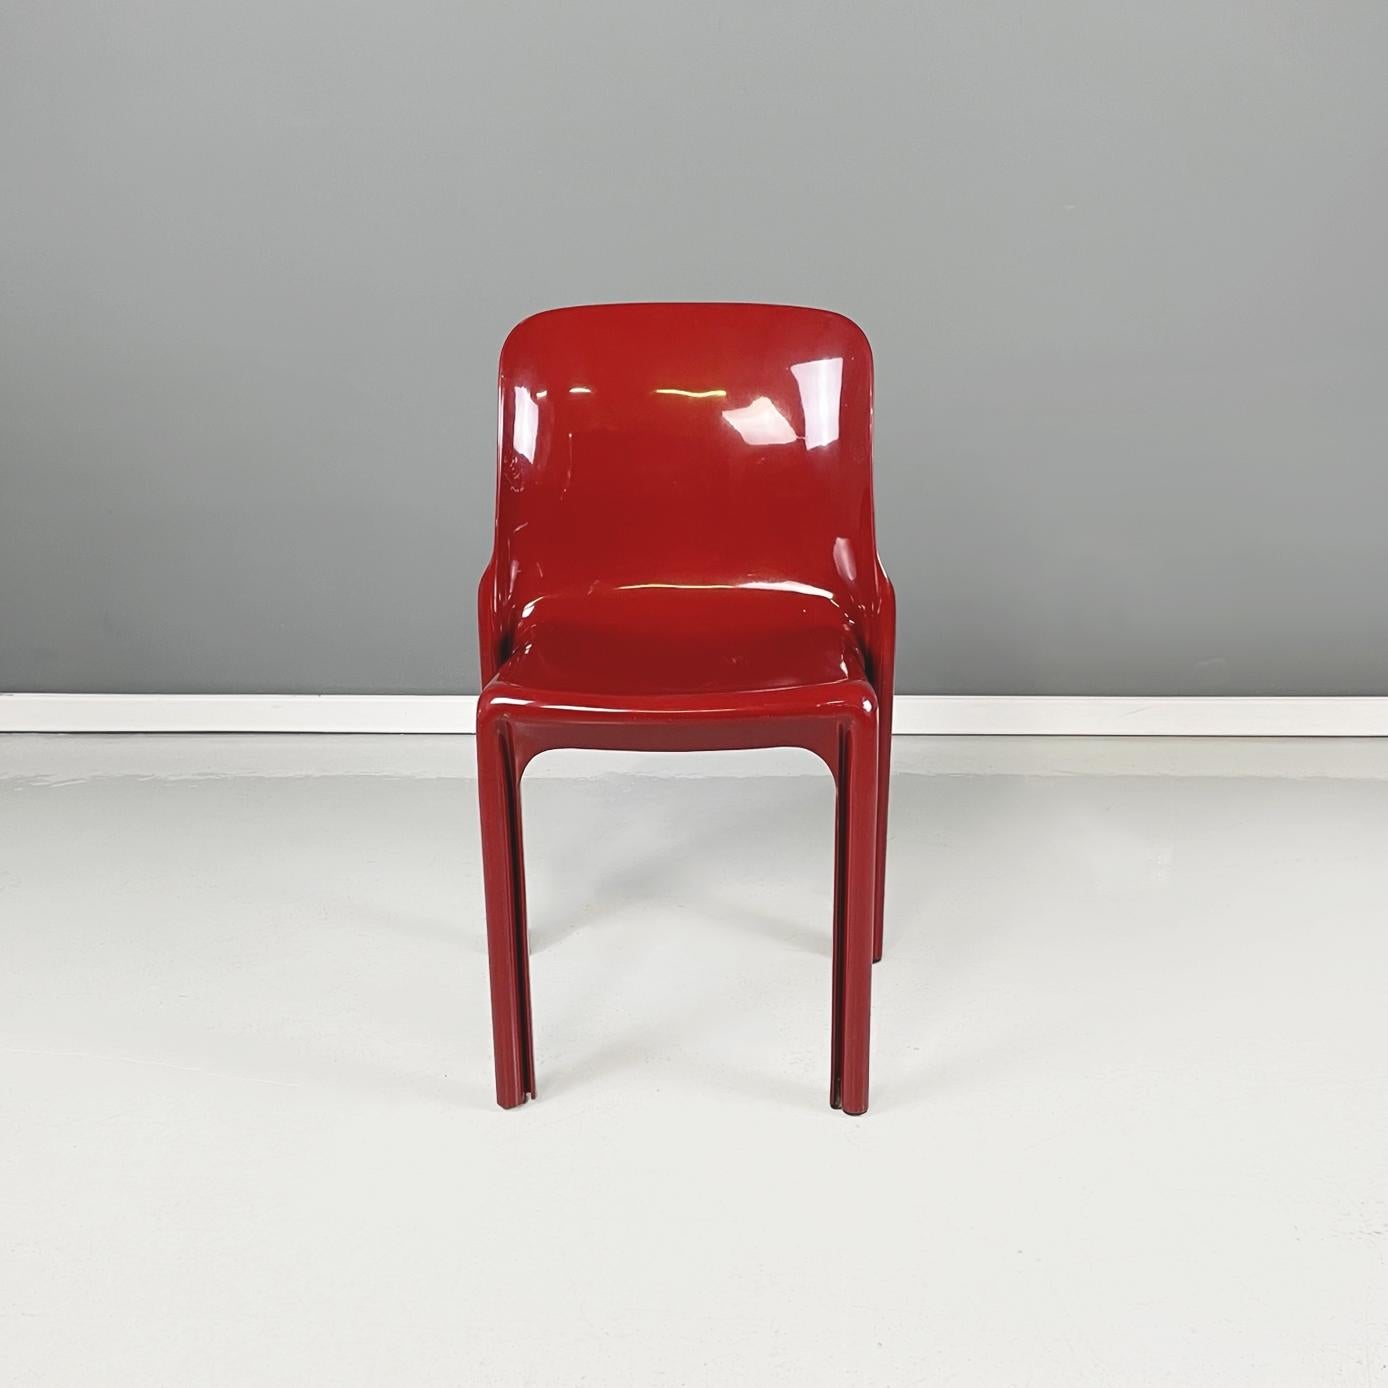 Italienische moderne rote Plastikstühle mod. Selene von Vico Magistretti für Artemide, 1960er Jahre
Satz von 4 ikonischen Stühlen mod. Selene in dunkelrot-burgund Kunststoff mit quadratischem Sitz. Die Struktur ist aus einem Stück gefertigt und hat